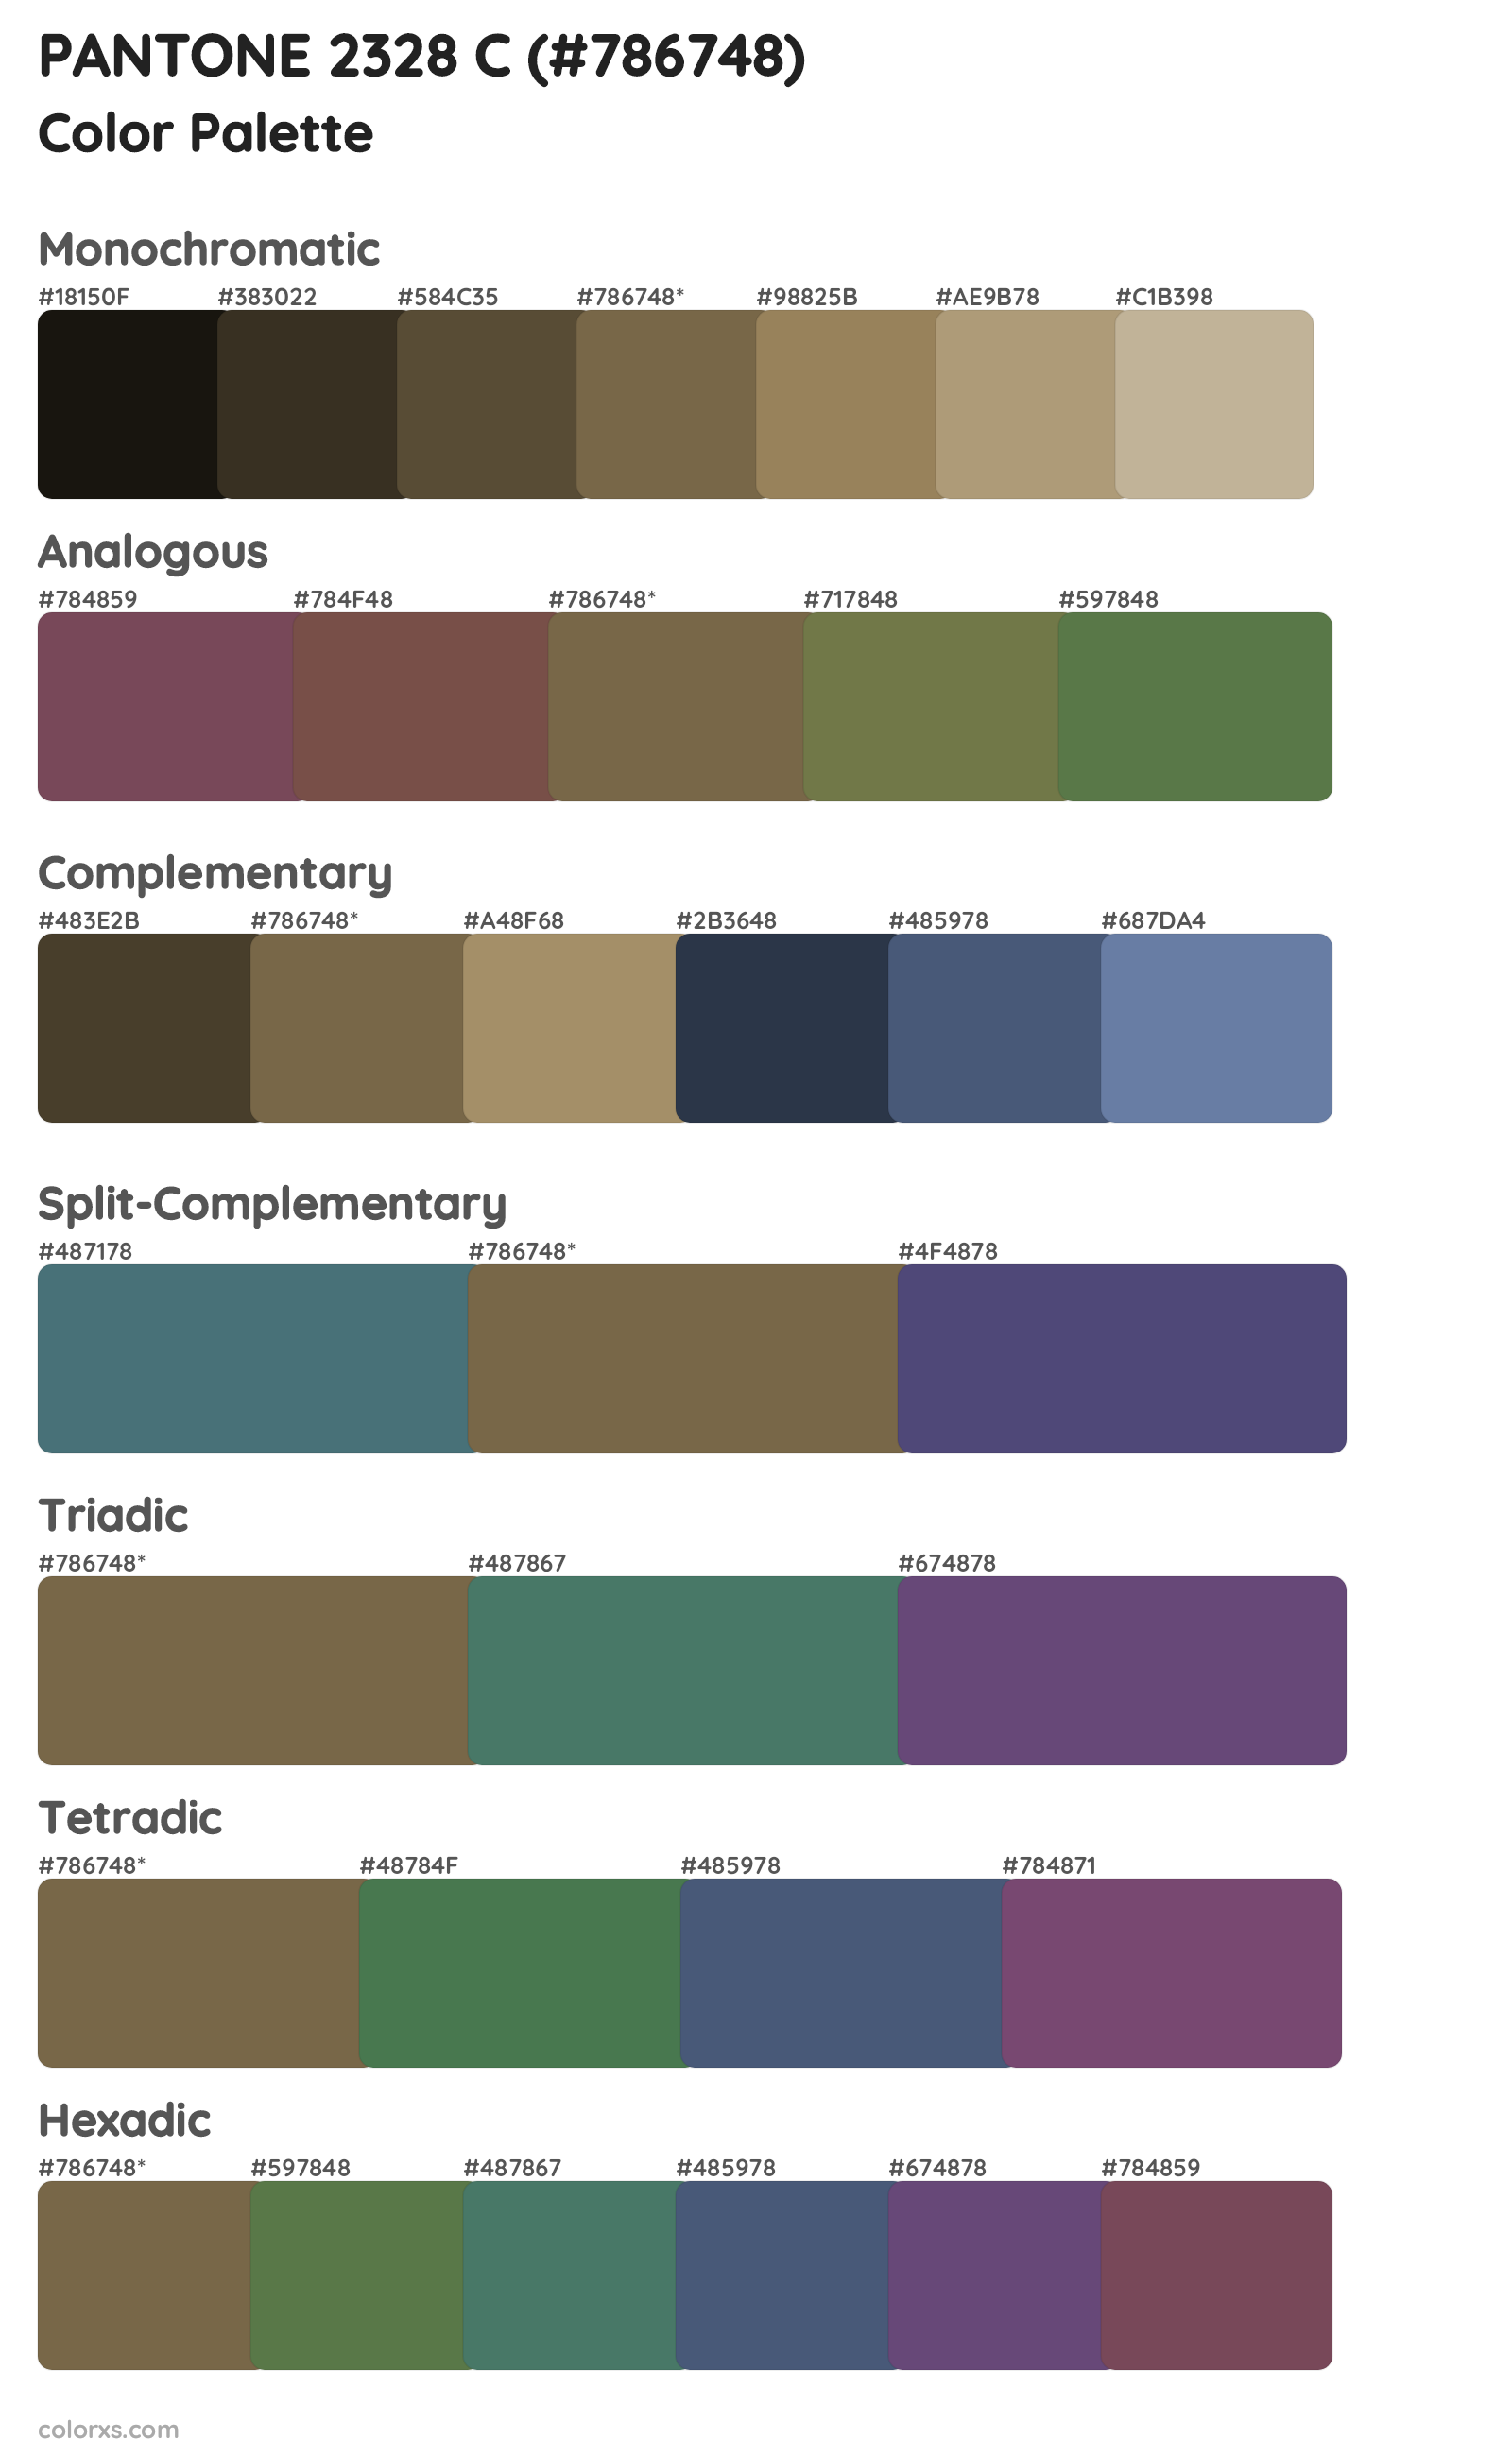 PANTONE 2328 C Color Scheme Palettes